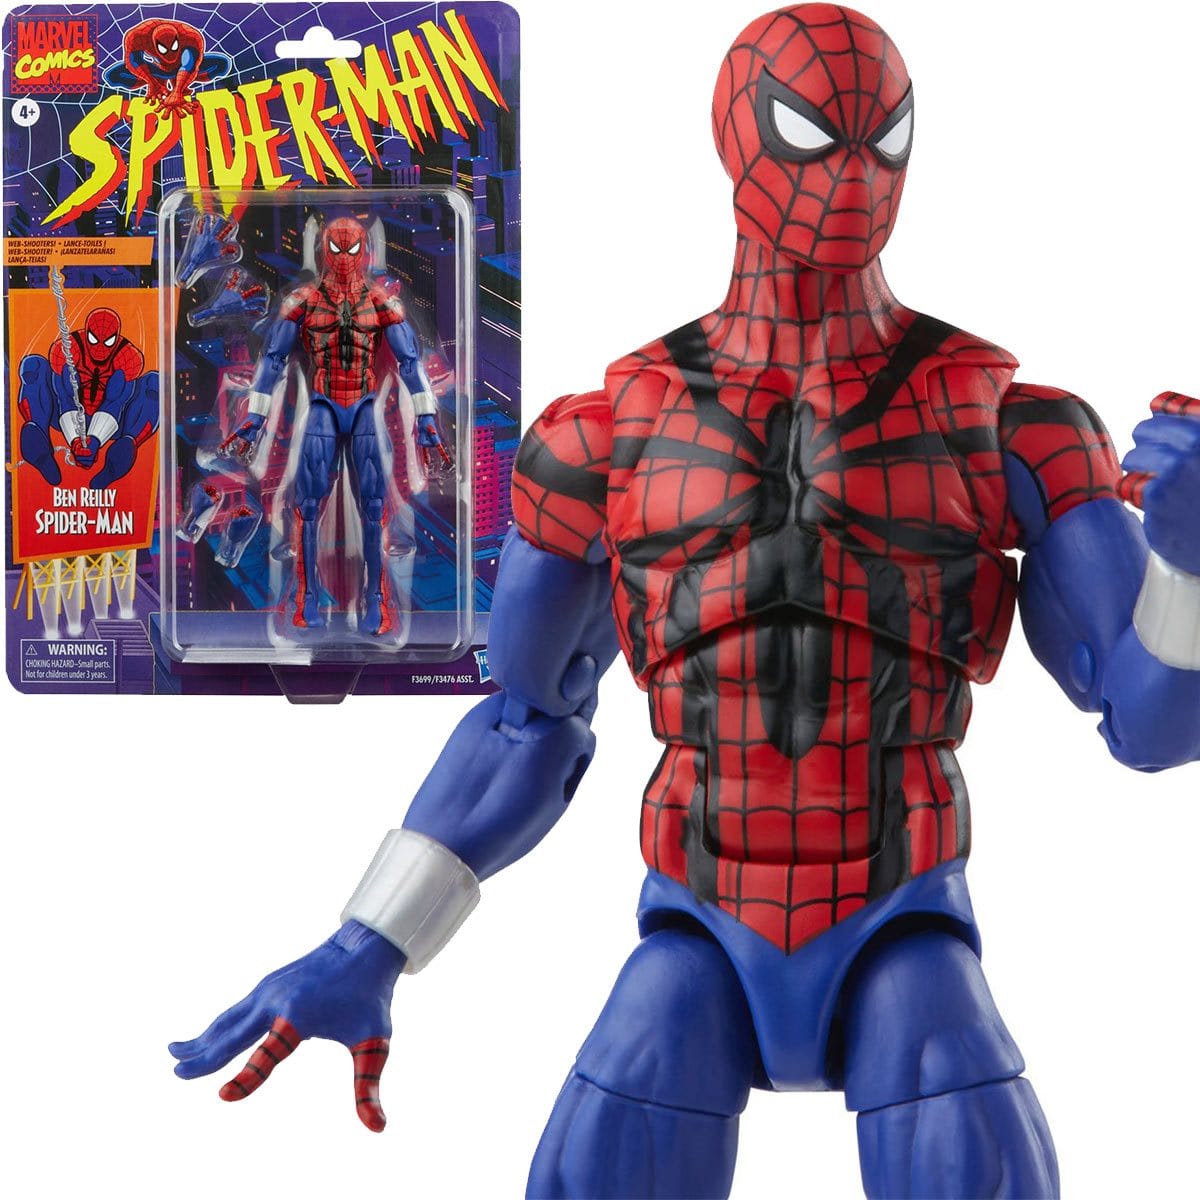 Spider-Man Retro Marvel Legends Legends Ben Reilly Spider-Man 6-inch Action Figure Pop-O-Loco